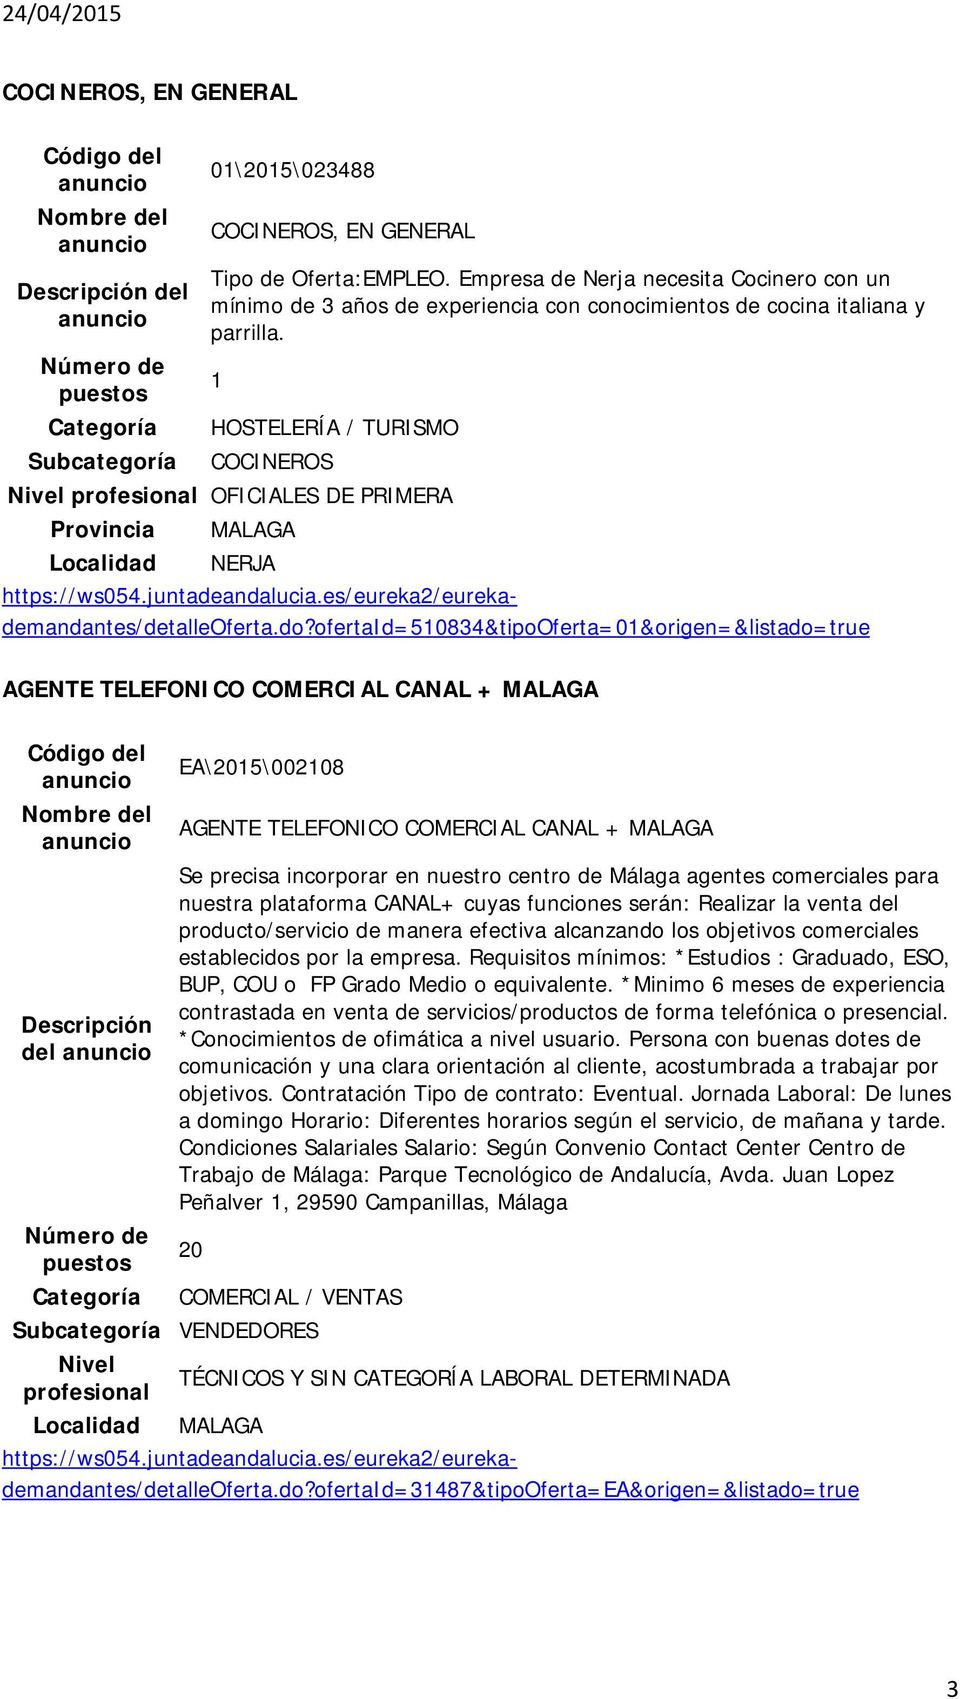 AGENTE TELEFONICO COMERCIAL CANAL + MALAGA Código del Nombre del Descripción del EA\2015\002108 AGENTE TELEFONICO COMERCIAL CANAL + MALAGA Se precisa incorporar en nuestro centro de Málaga agentes